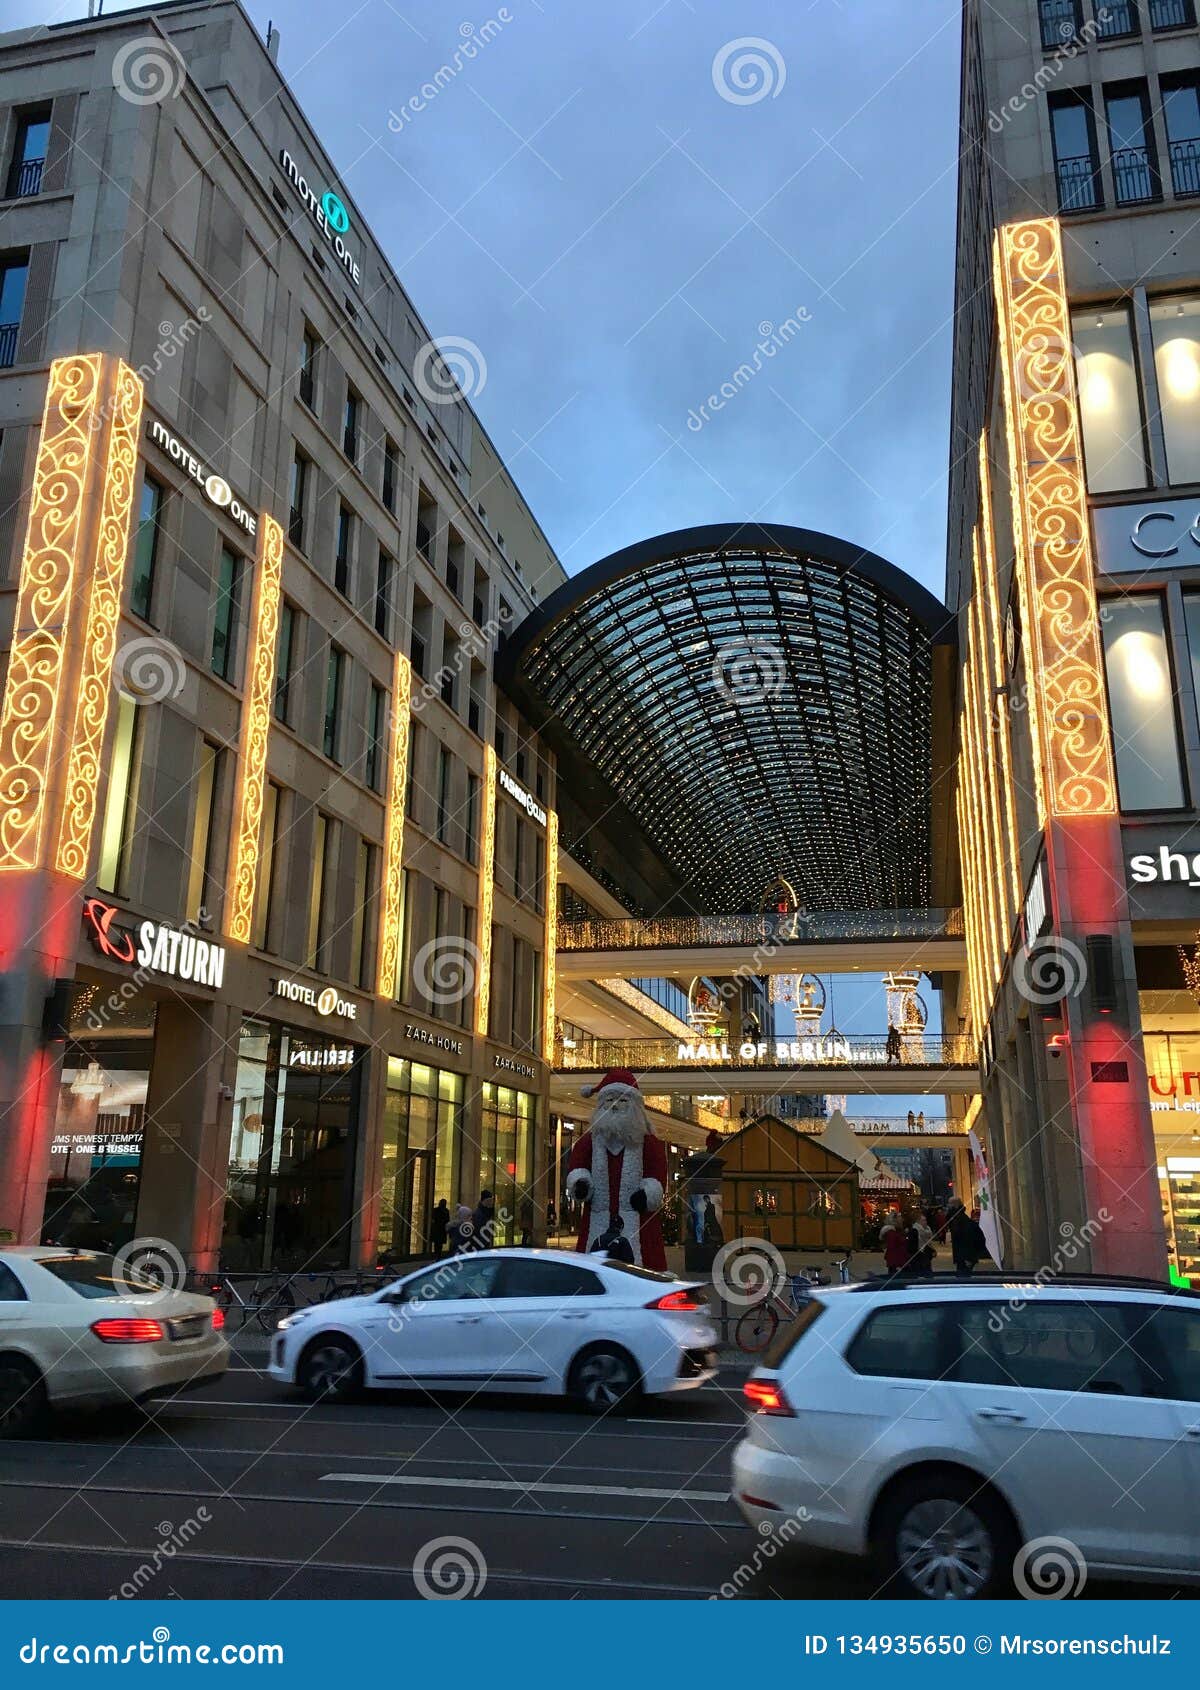 Berlim, Alemanha - 10 de dezembro de 2018: Shopping de Berlin Exterior com decoração do Natal, árvore de Natal e luzes